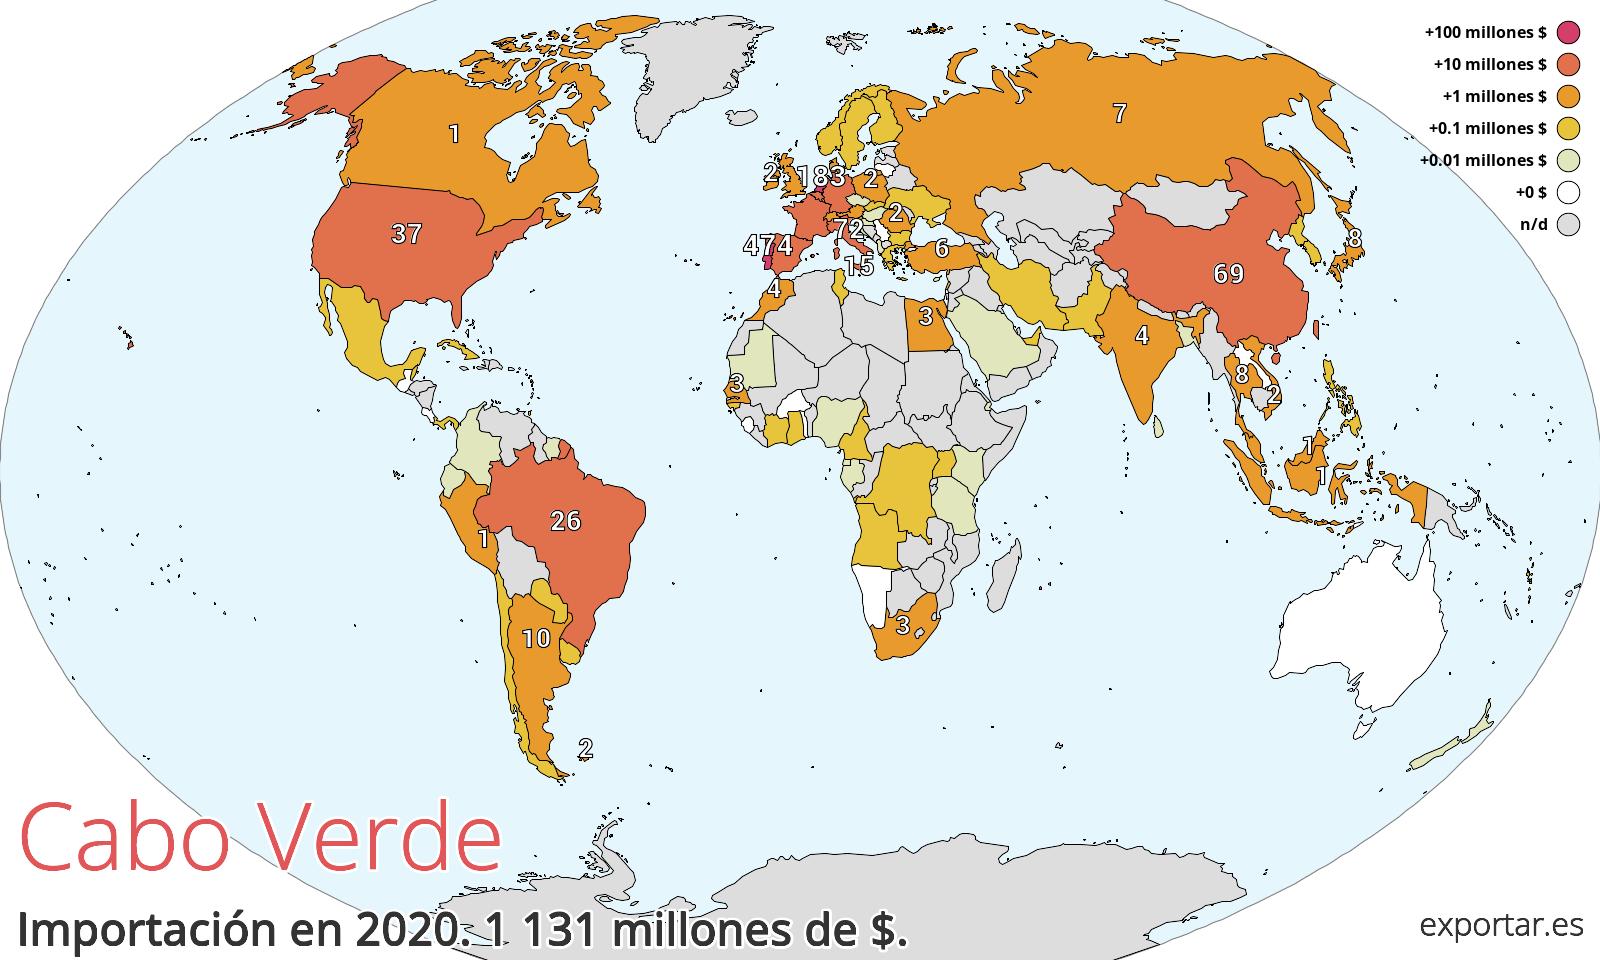 Mapa de importación de Cabo Verde en 2020.